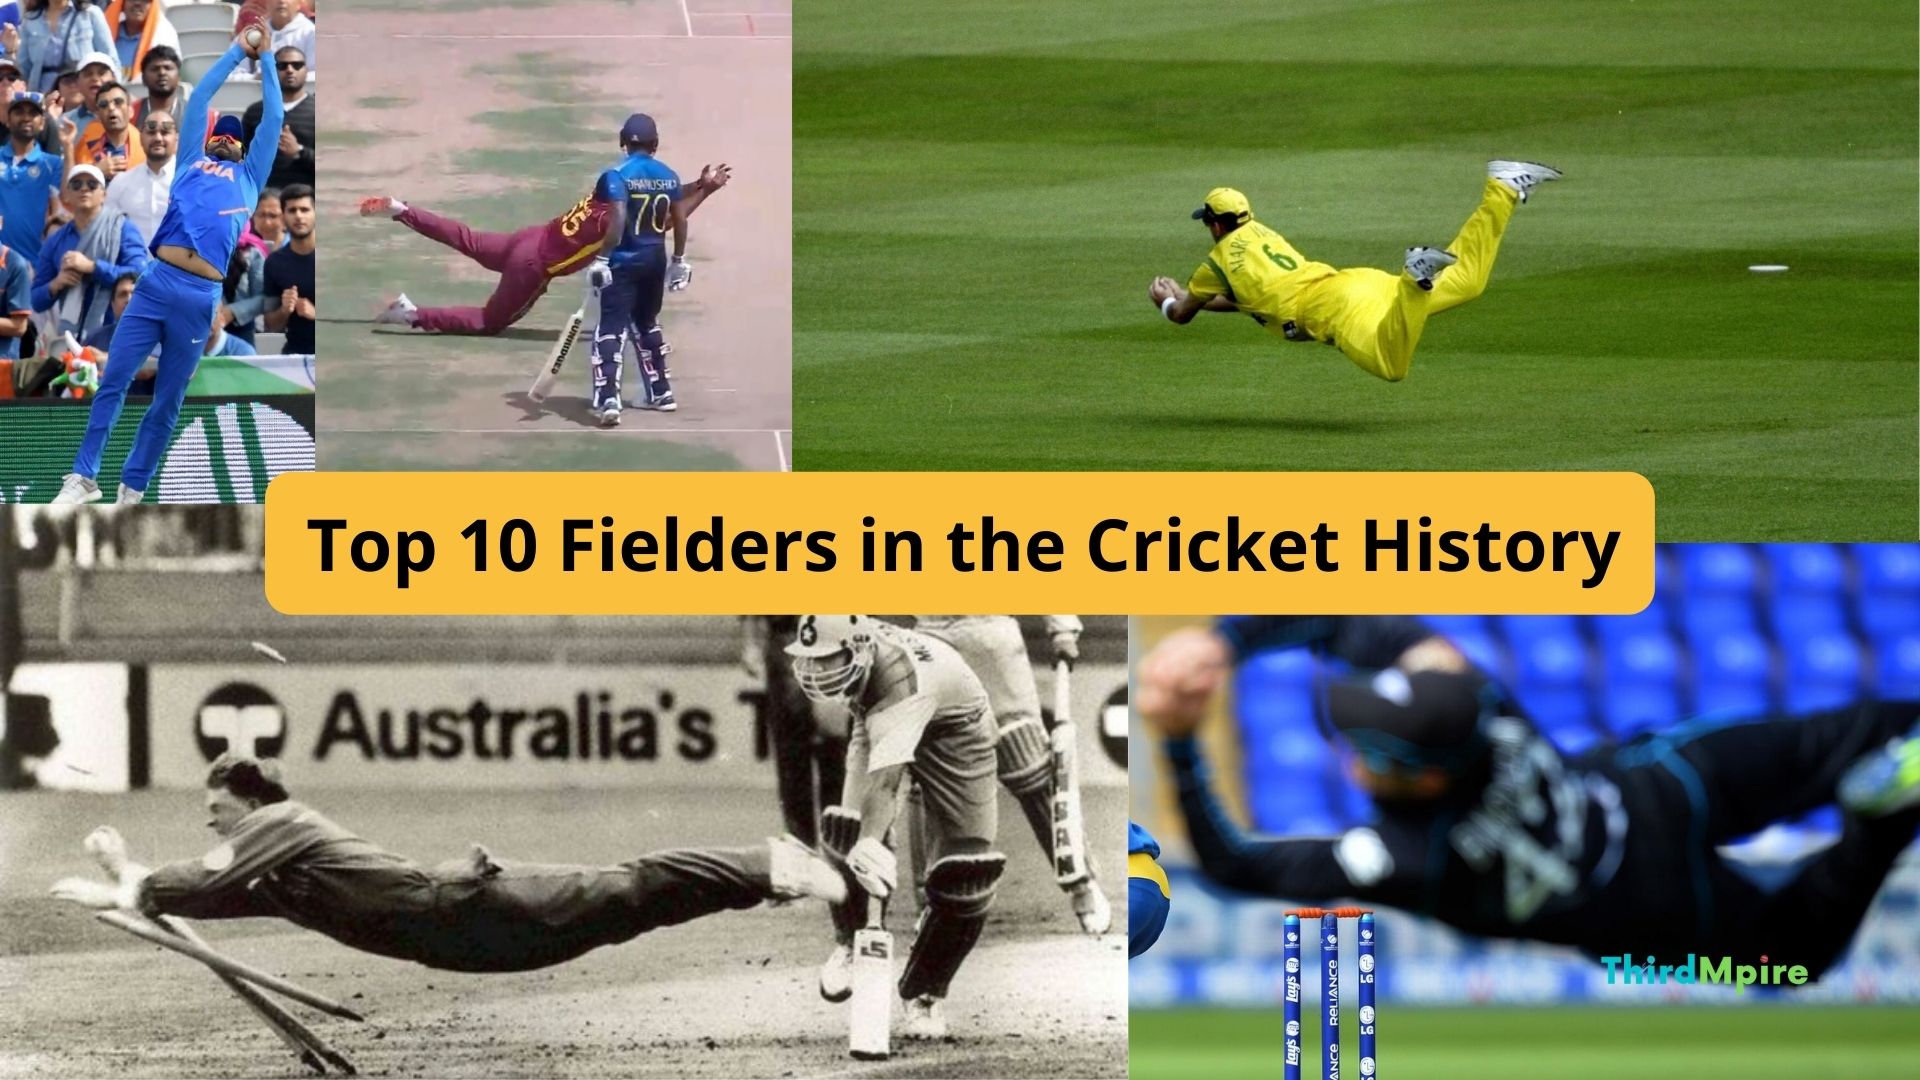 Top 10 Fielders in the Cricket History